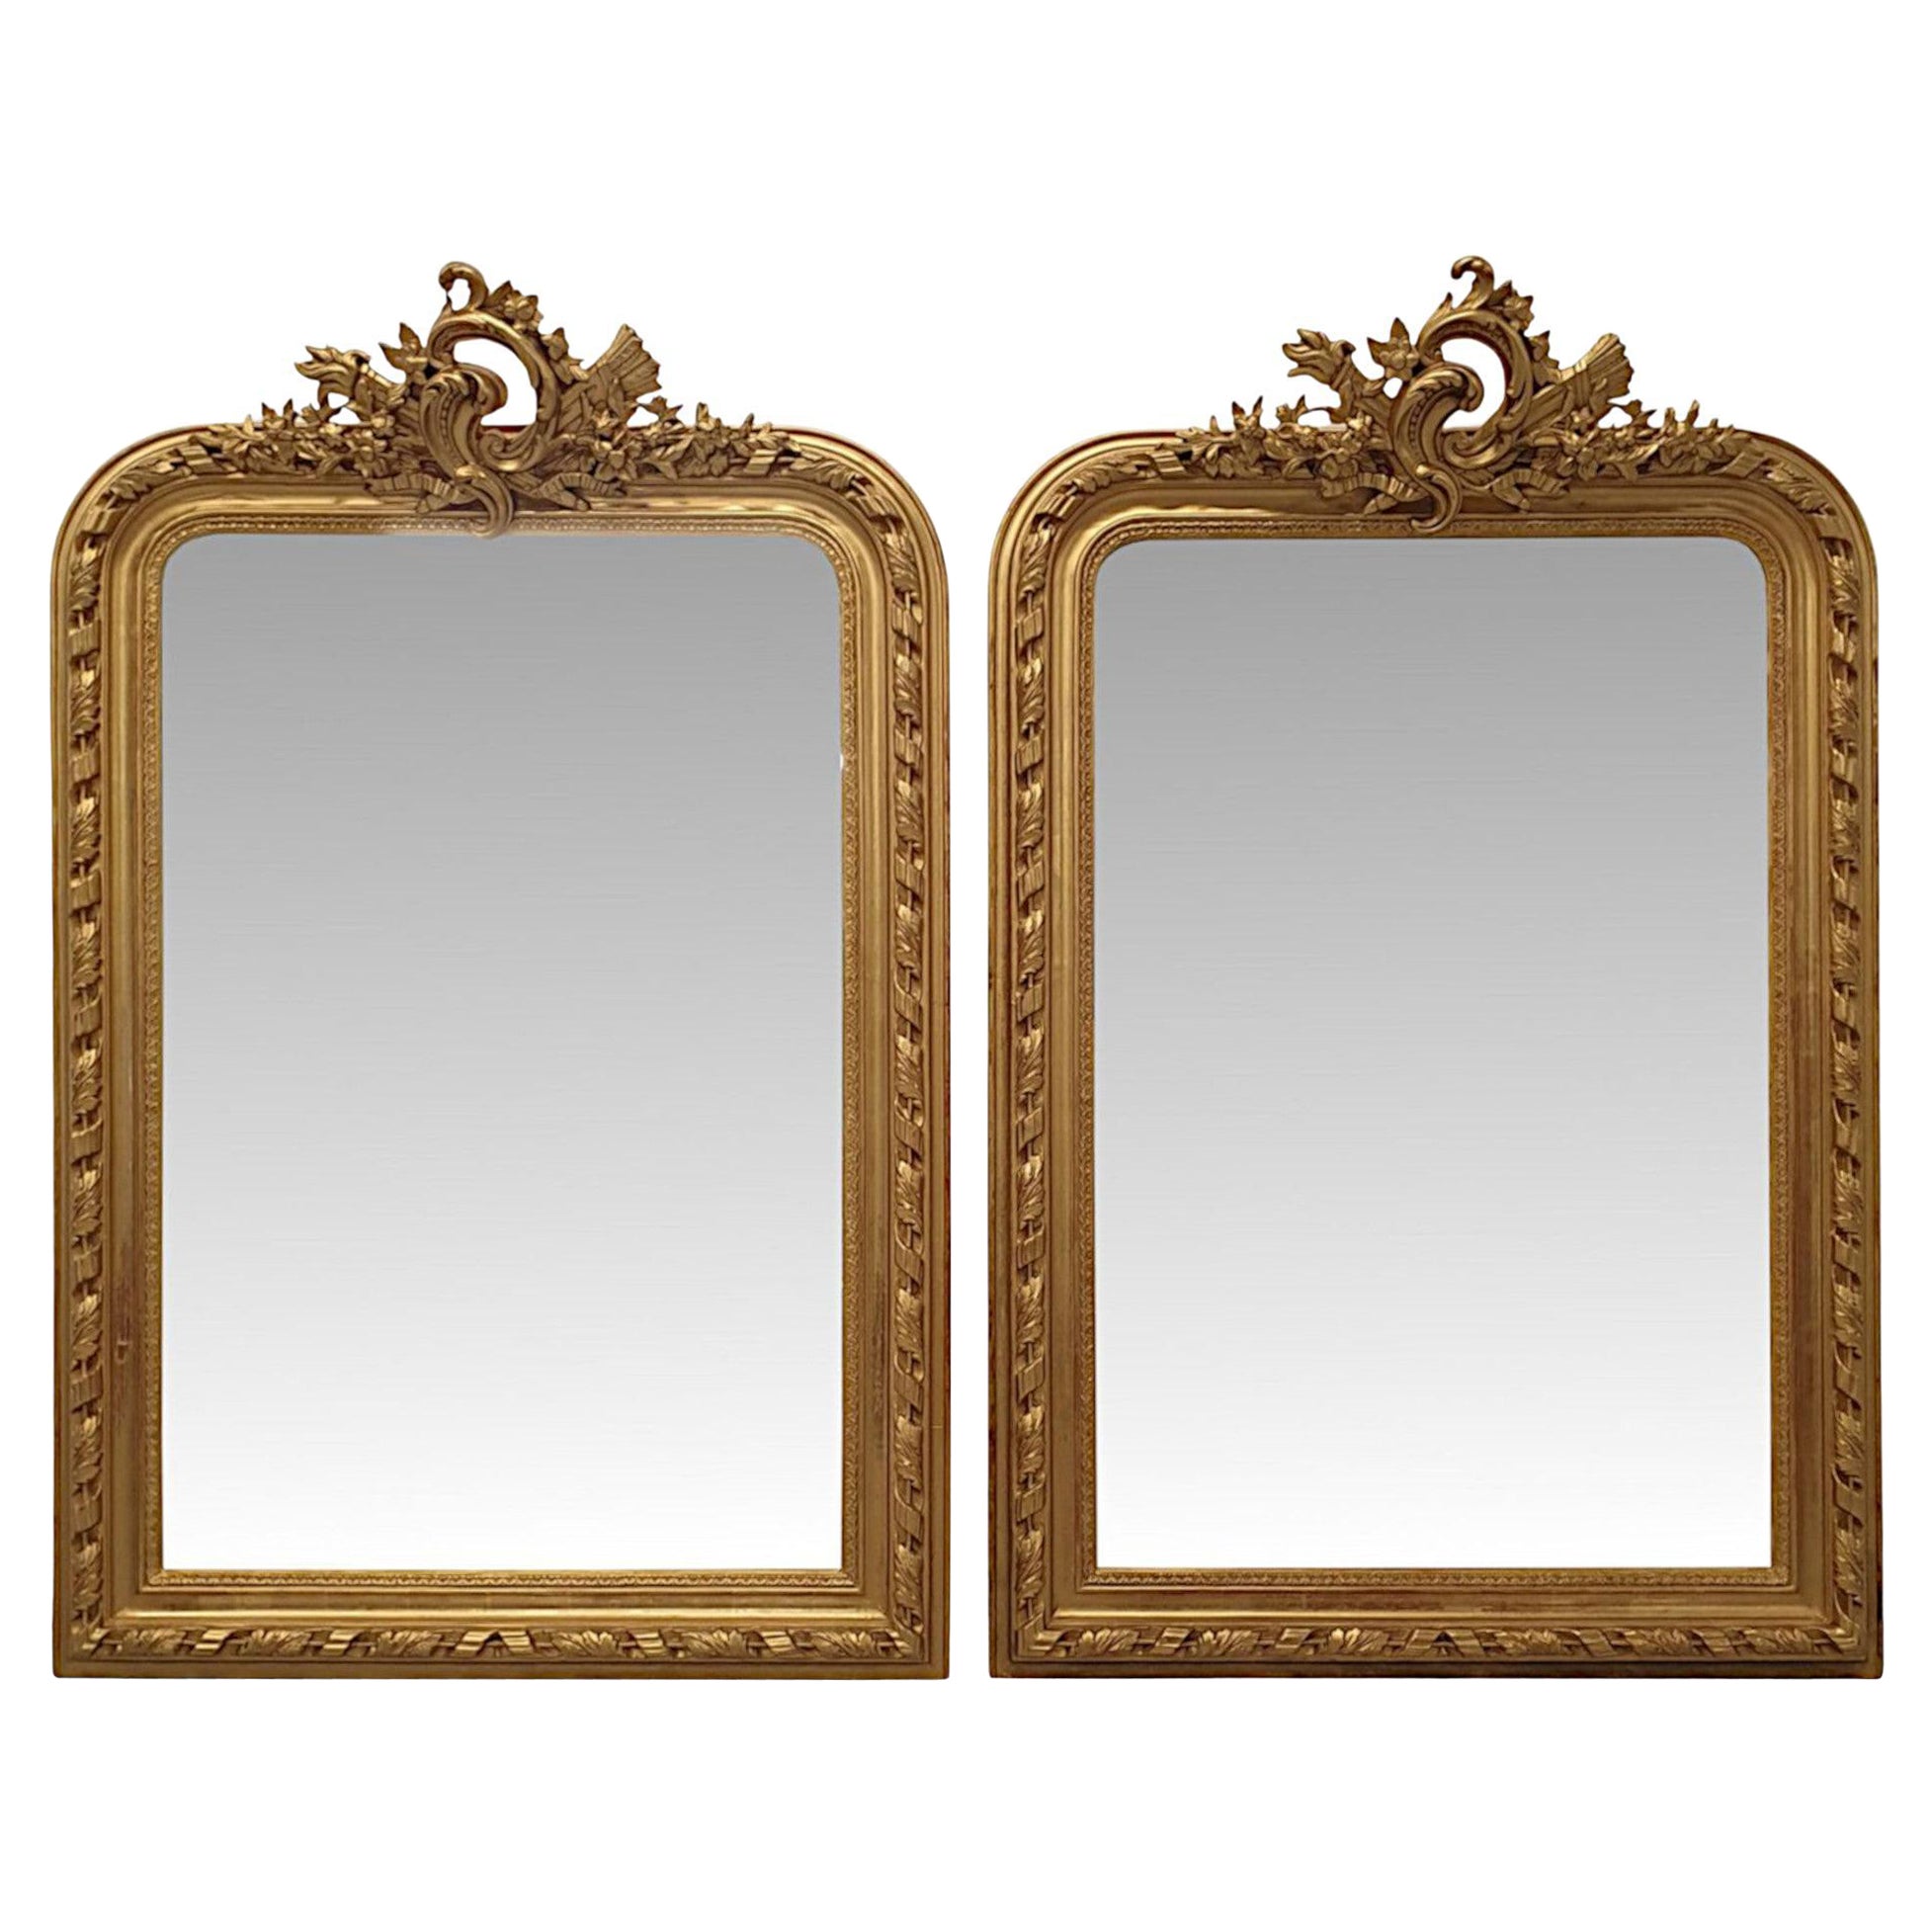 Très rare et belle paire de miroirs en bois doré du 19ème siècle